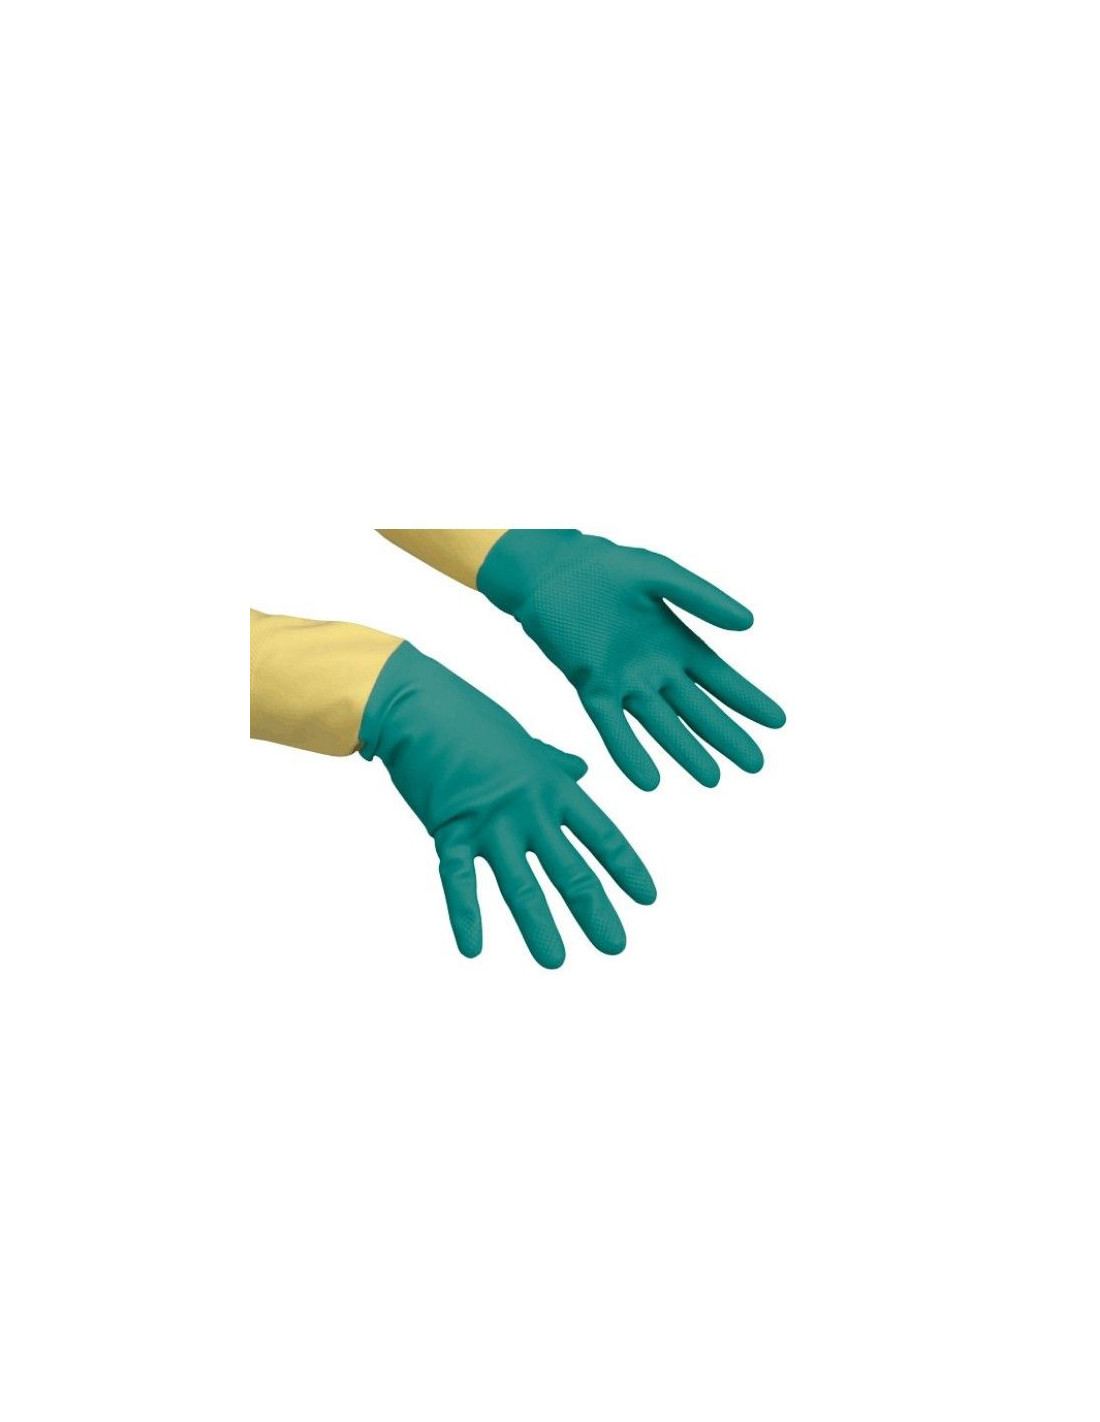 Transporte Marcha mala Clan Comprar guantes latex vileda superfuertes talla extragrande 9,5 en  Distribuciones Batoy